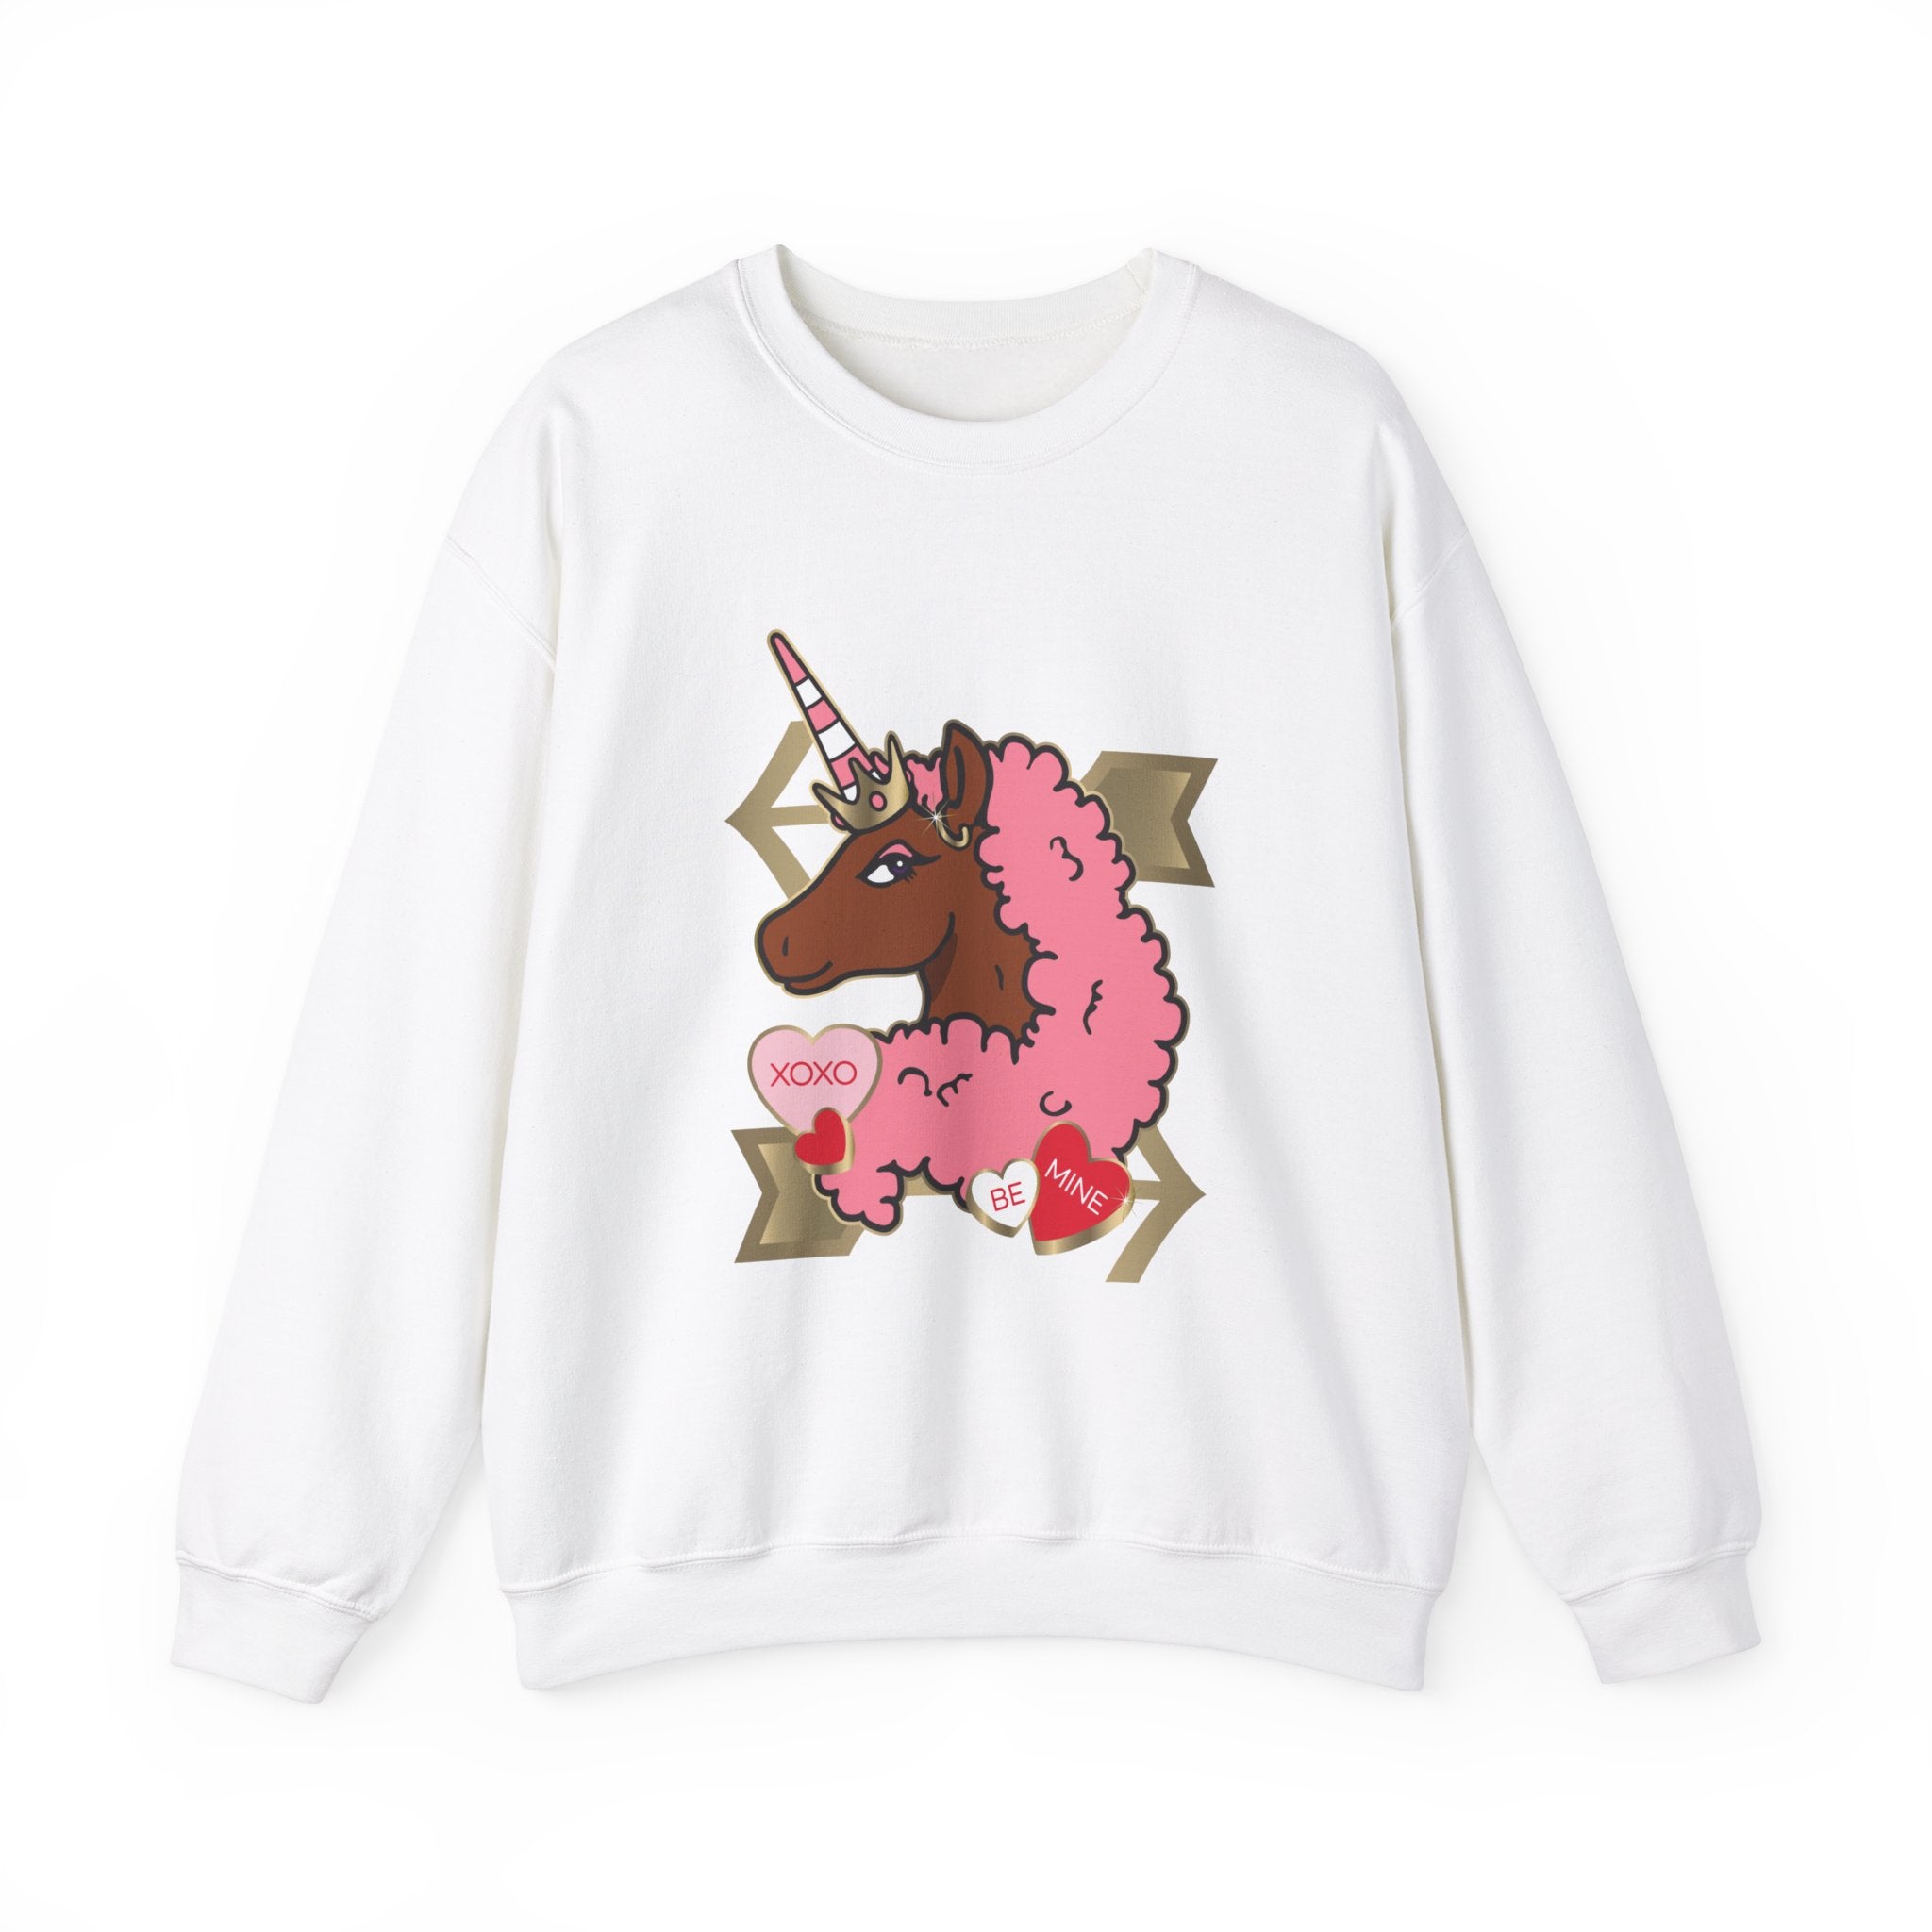 Afro Unicorn Love Sweatshirt Adult Tee